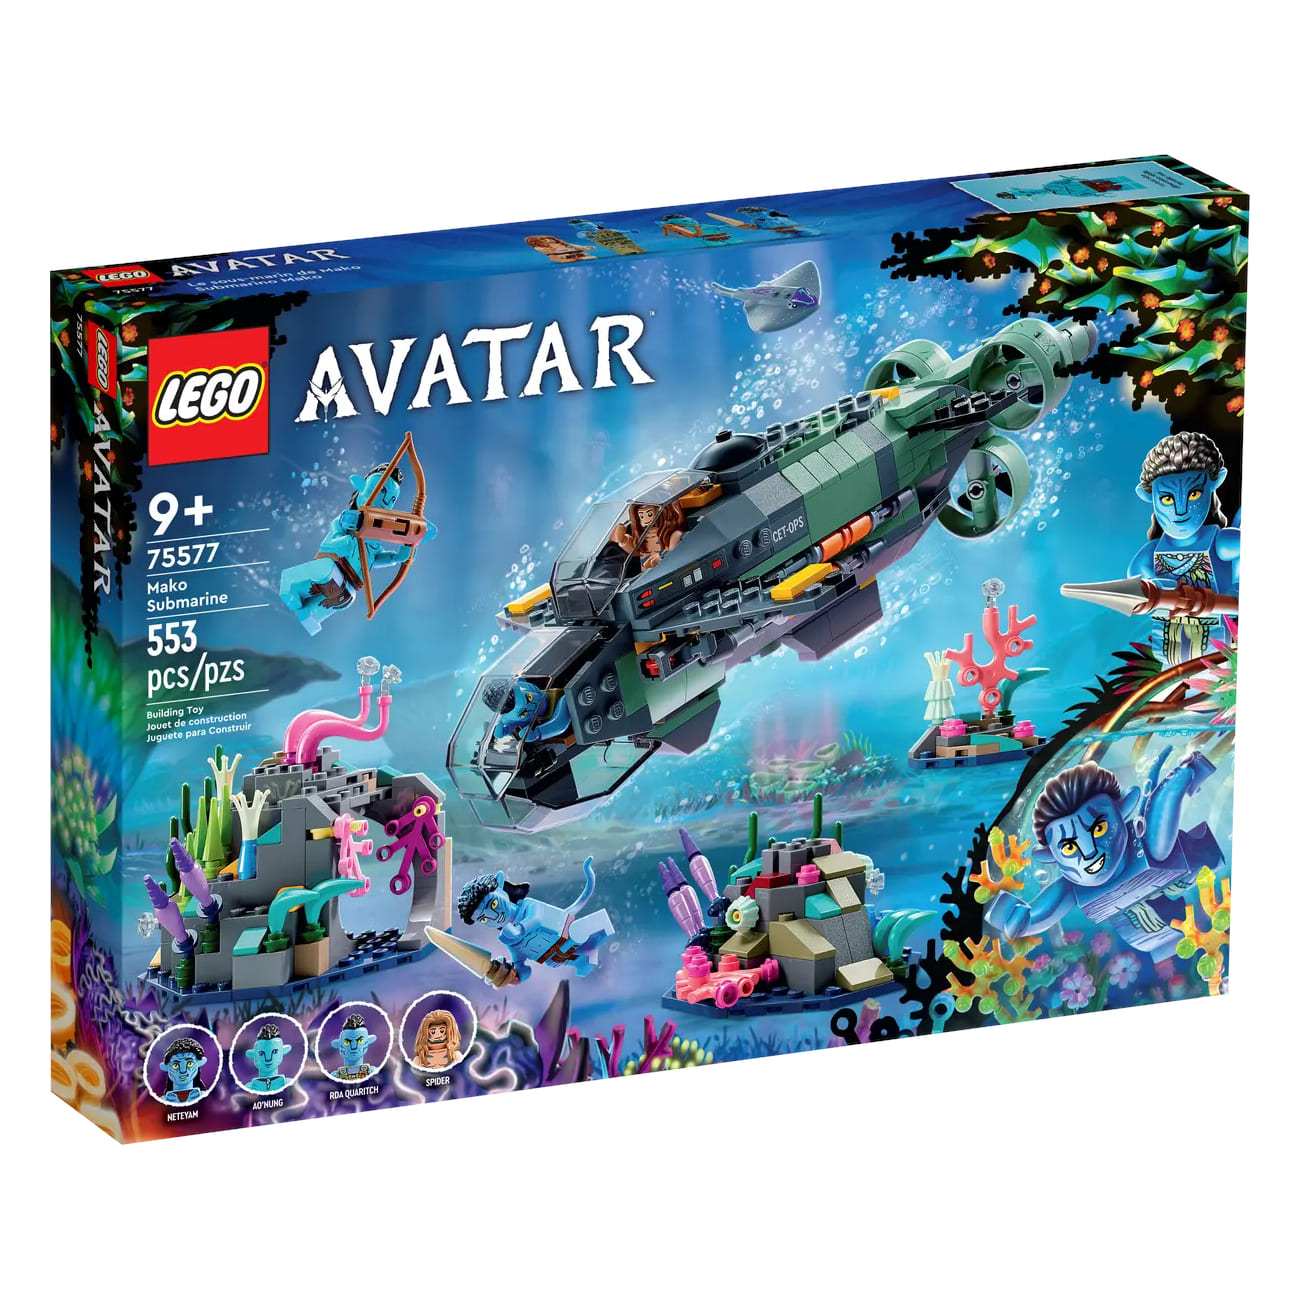 Конструктор LEGO Avatar Mako Submarine 75577, 553 детали 6 шт набор фигурок аватар 2 путь воды